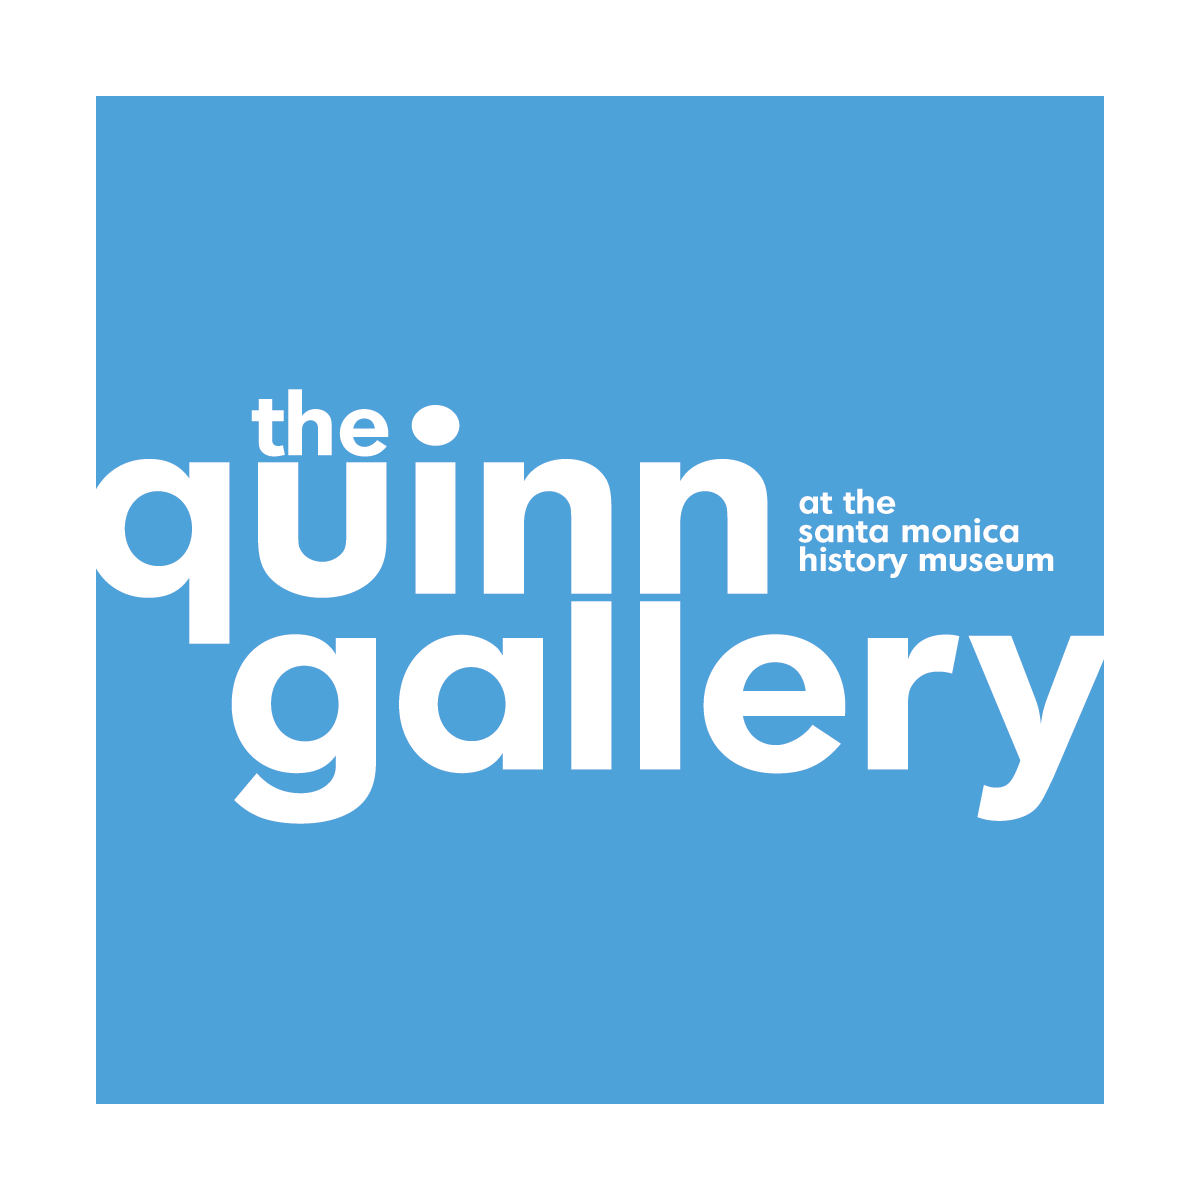 Quinn Gallery logo